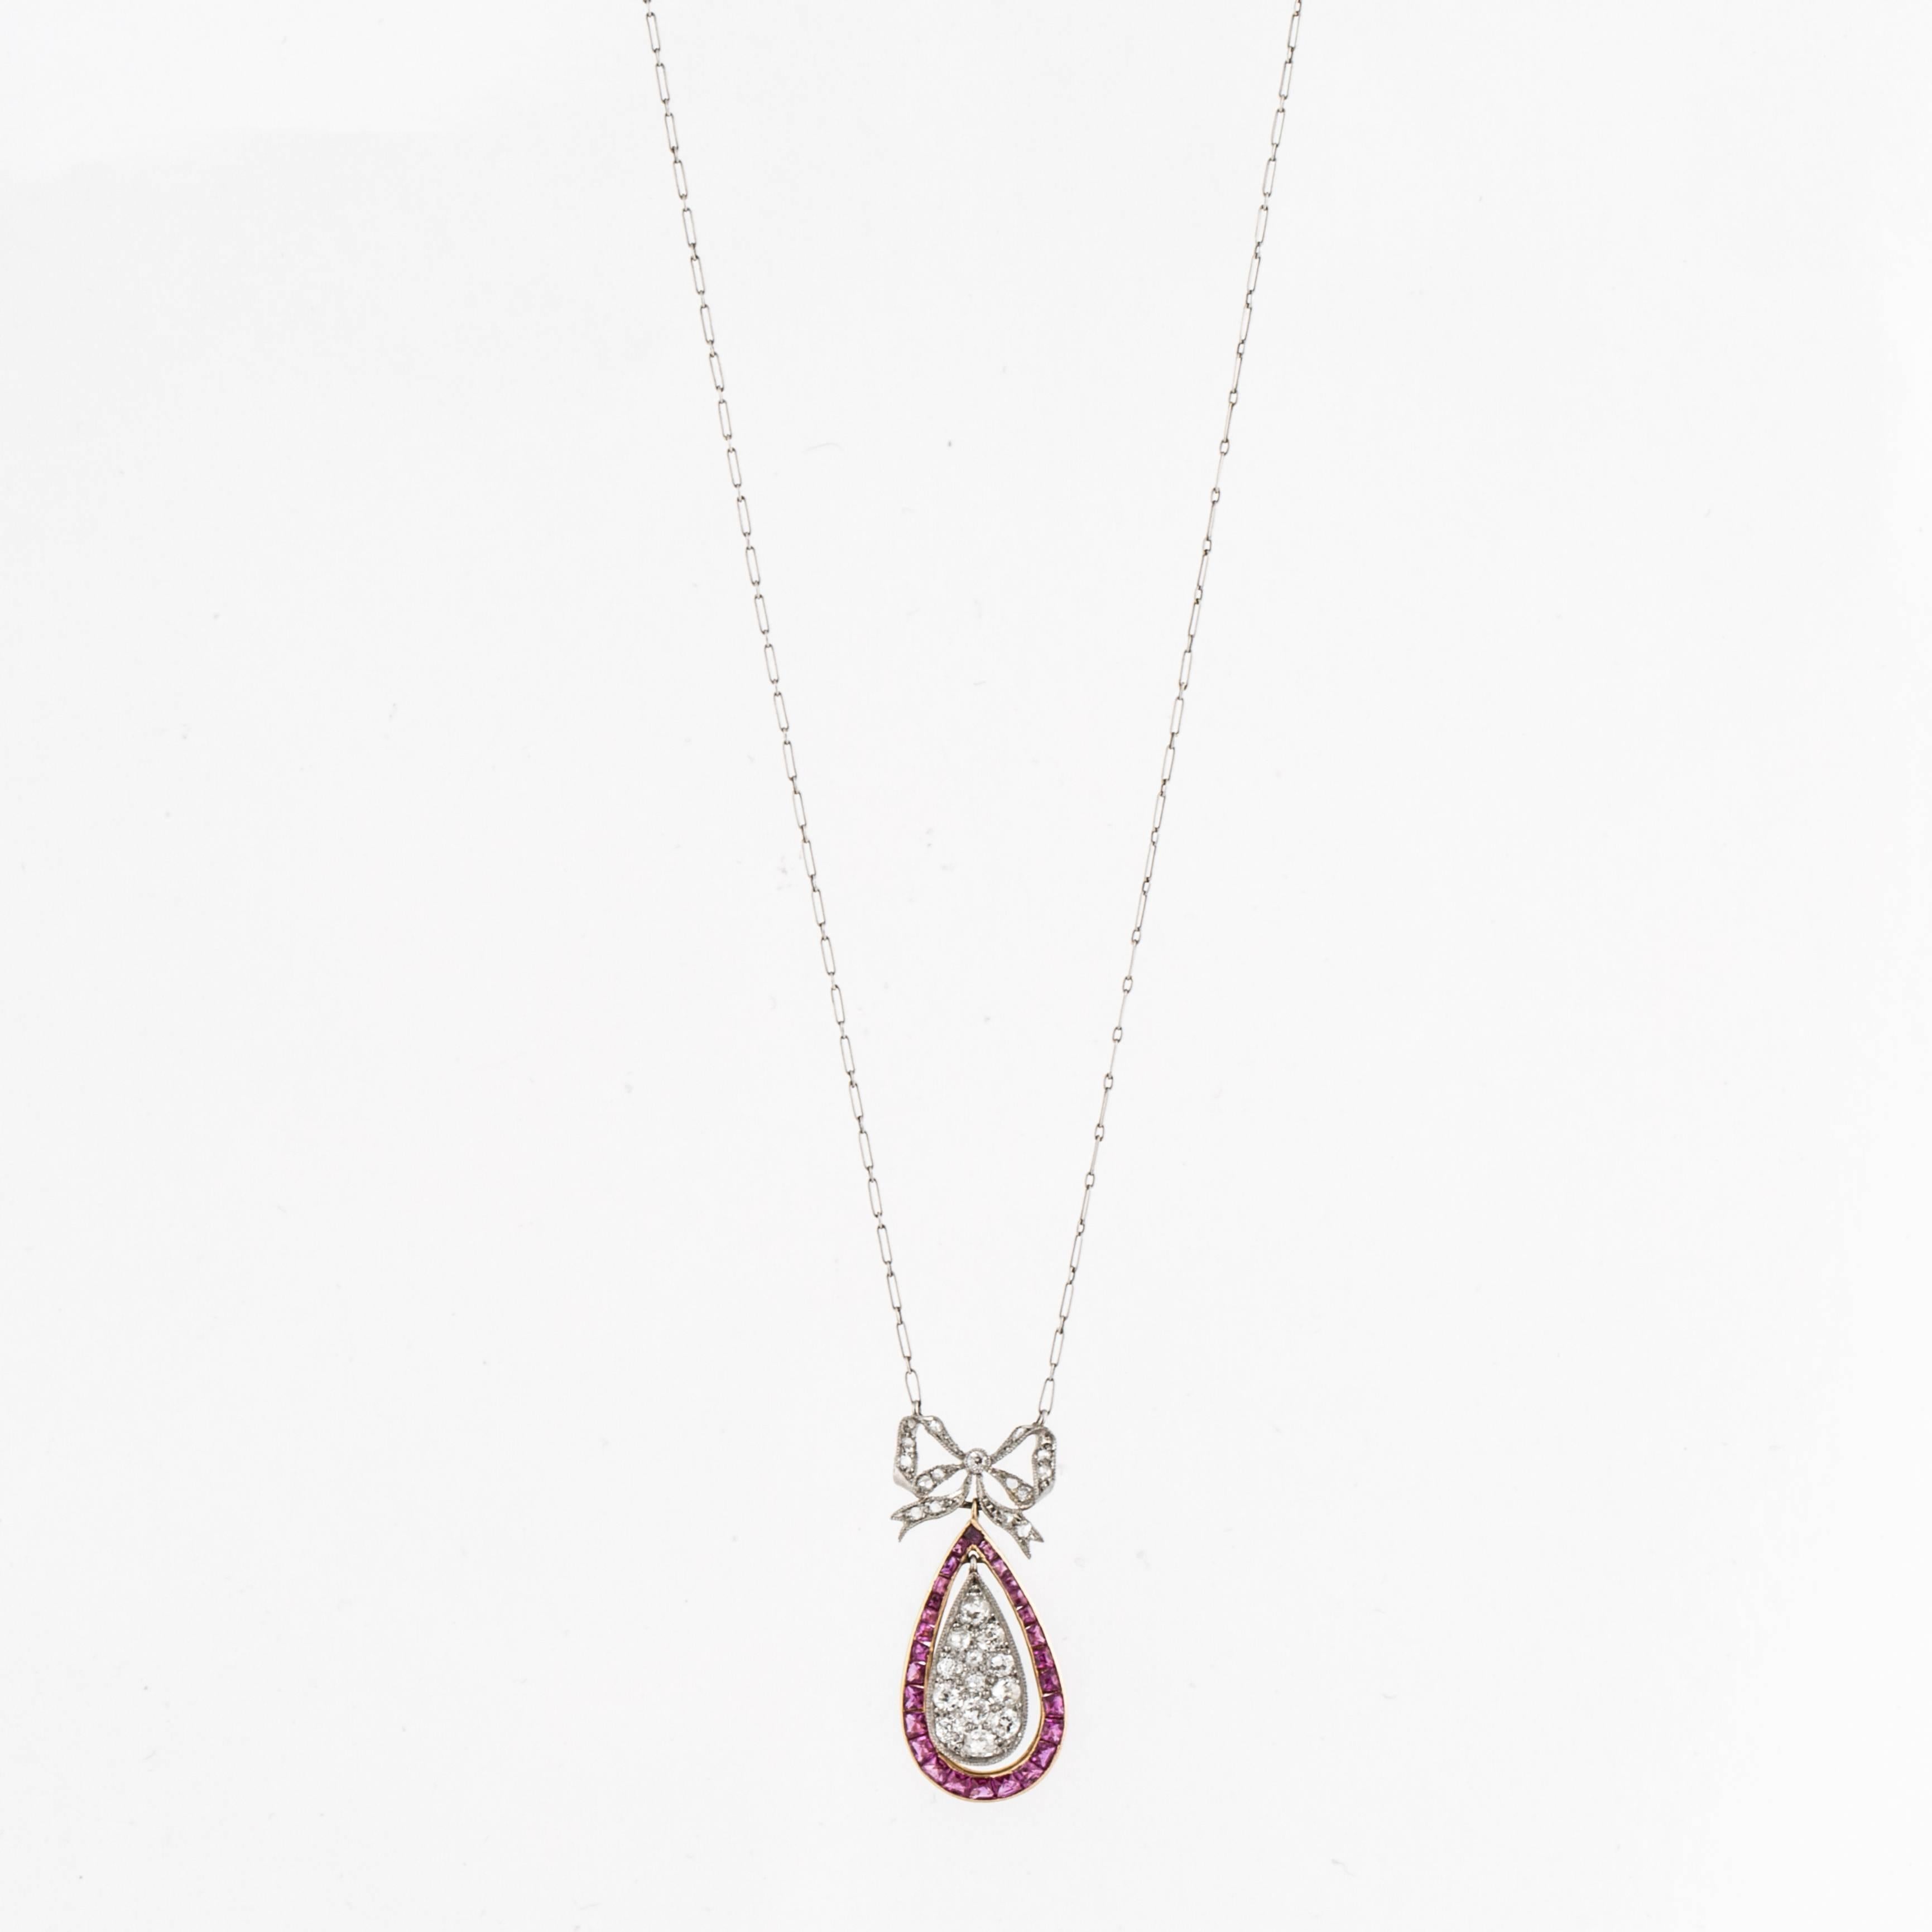 Collier pendentif Belle Époque en platine et or 18 carats serti de diamants et de rubis taillés en calibre, avec marques françaises, vers 1910.  Il y a 14 diamants taillés en rose qui totalisent 0,14 carats et 14 diamants taillés à l'unité qui